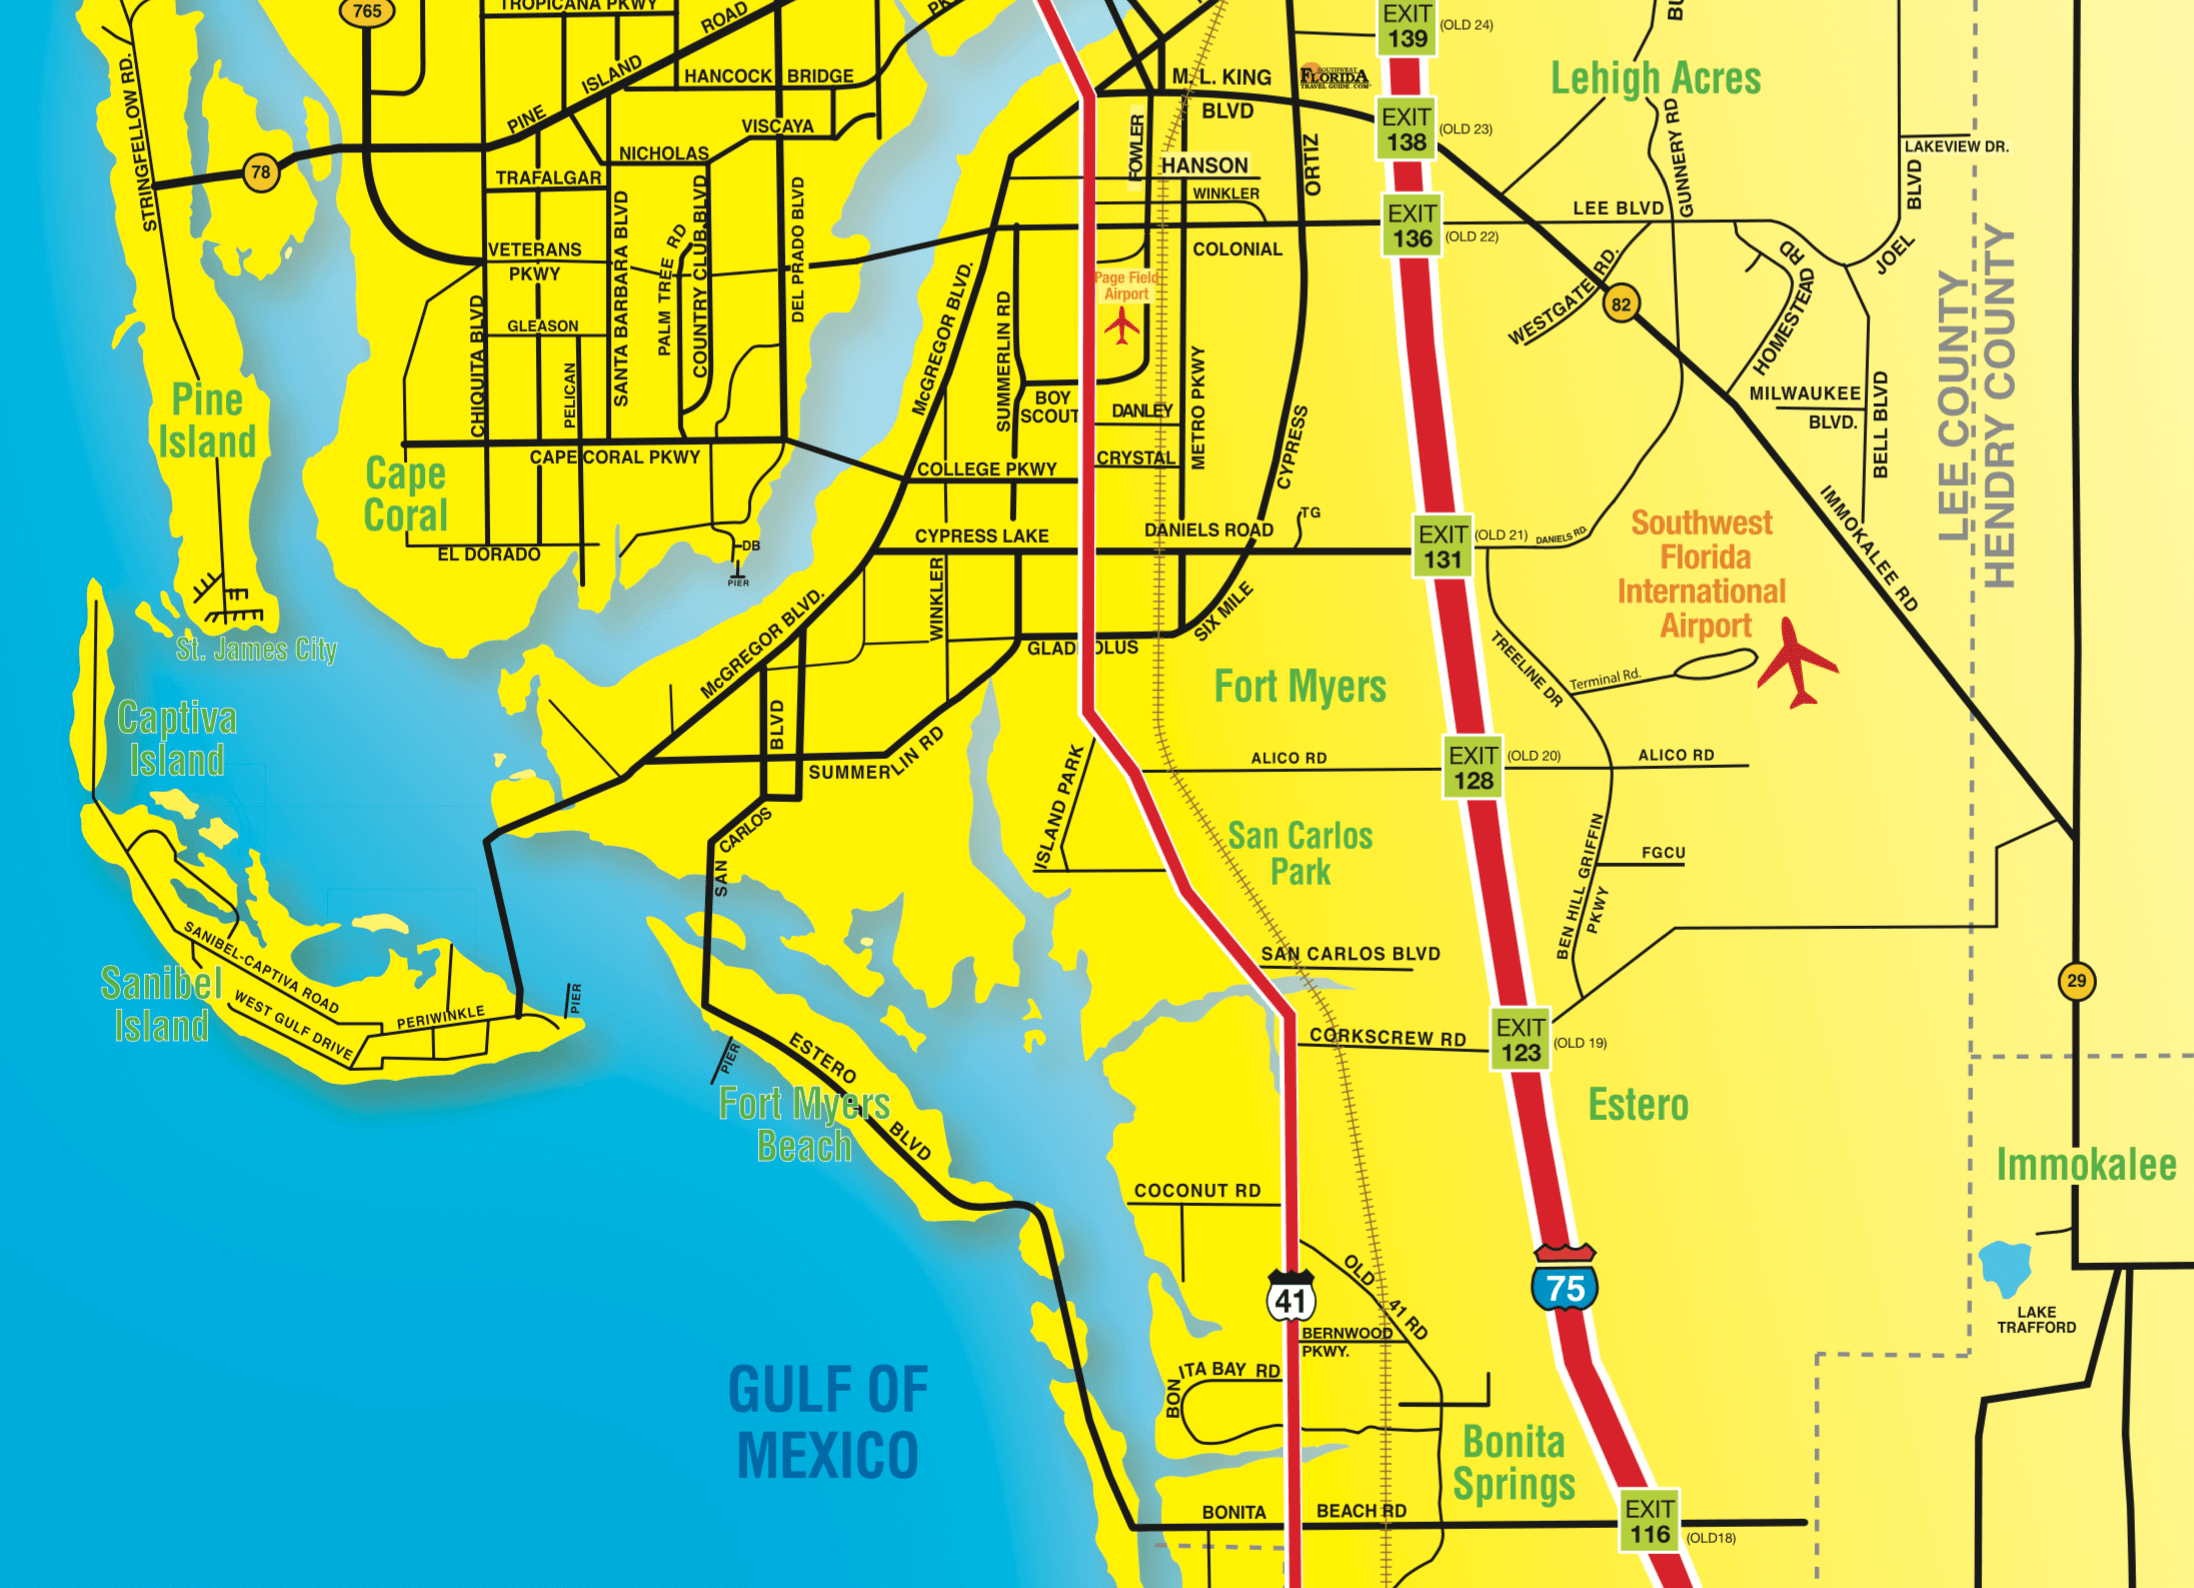 Florida Maps - Southwest Florida Travel - Map Of Southwest Florida Beaches